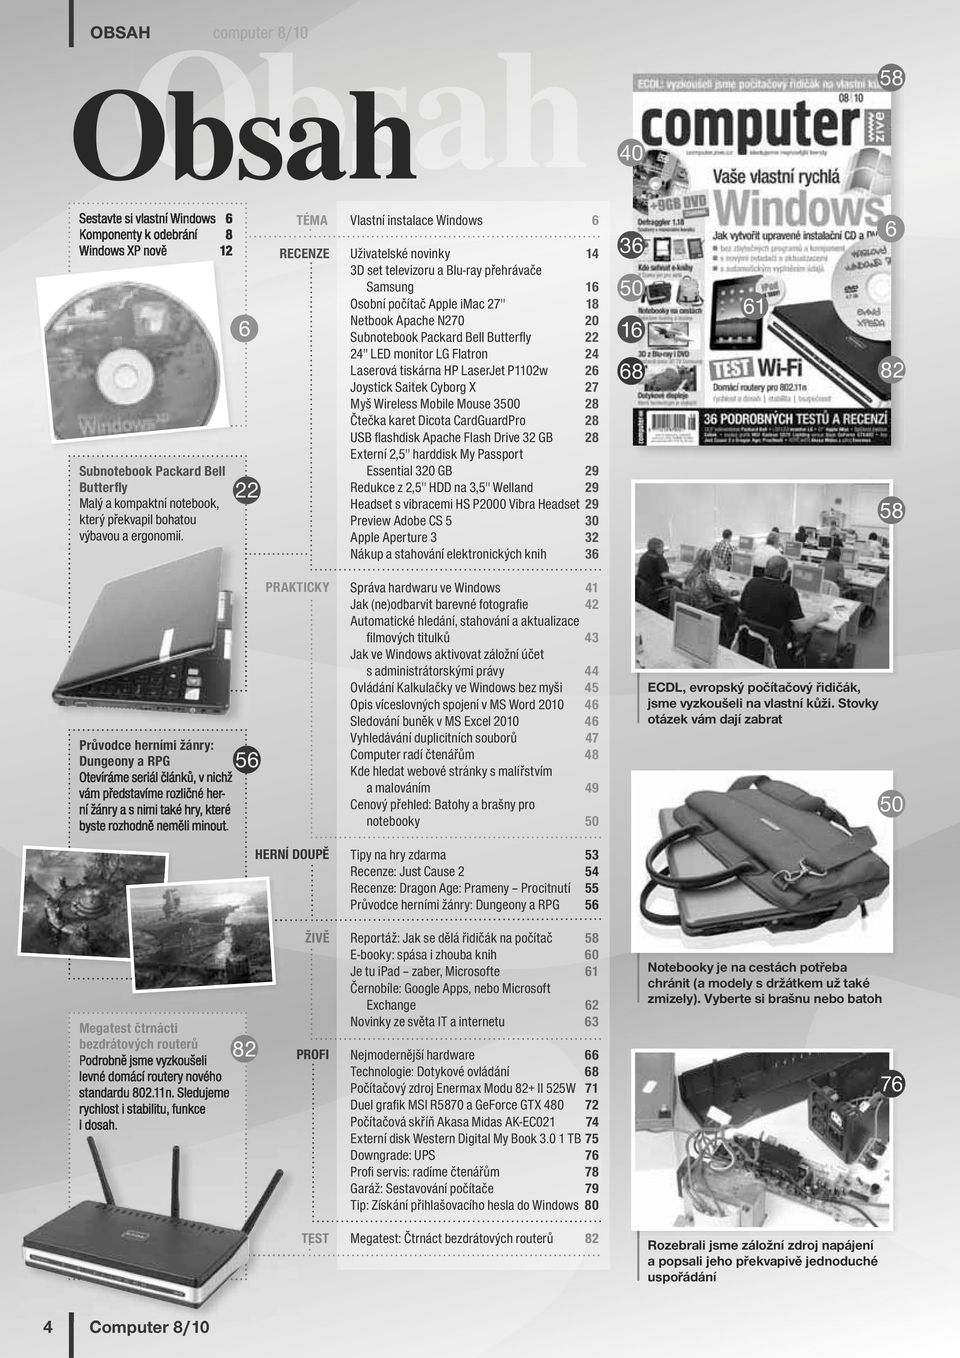 Bell Butterfly 22 24" LED monitor LG Flatron 24 Laserová tiskárna HP LaserJet P1102w 26 Joystick Saitek Cyborg X 27 Myš Wireless Mobile Mouse 3500 28 Čtečka karet Dicota CardGuardPro 28 USB flashdisk